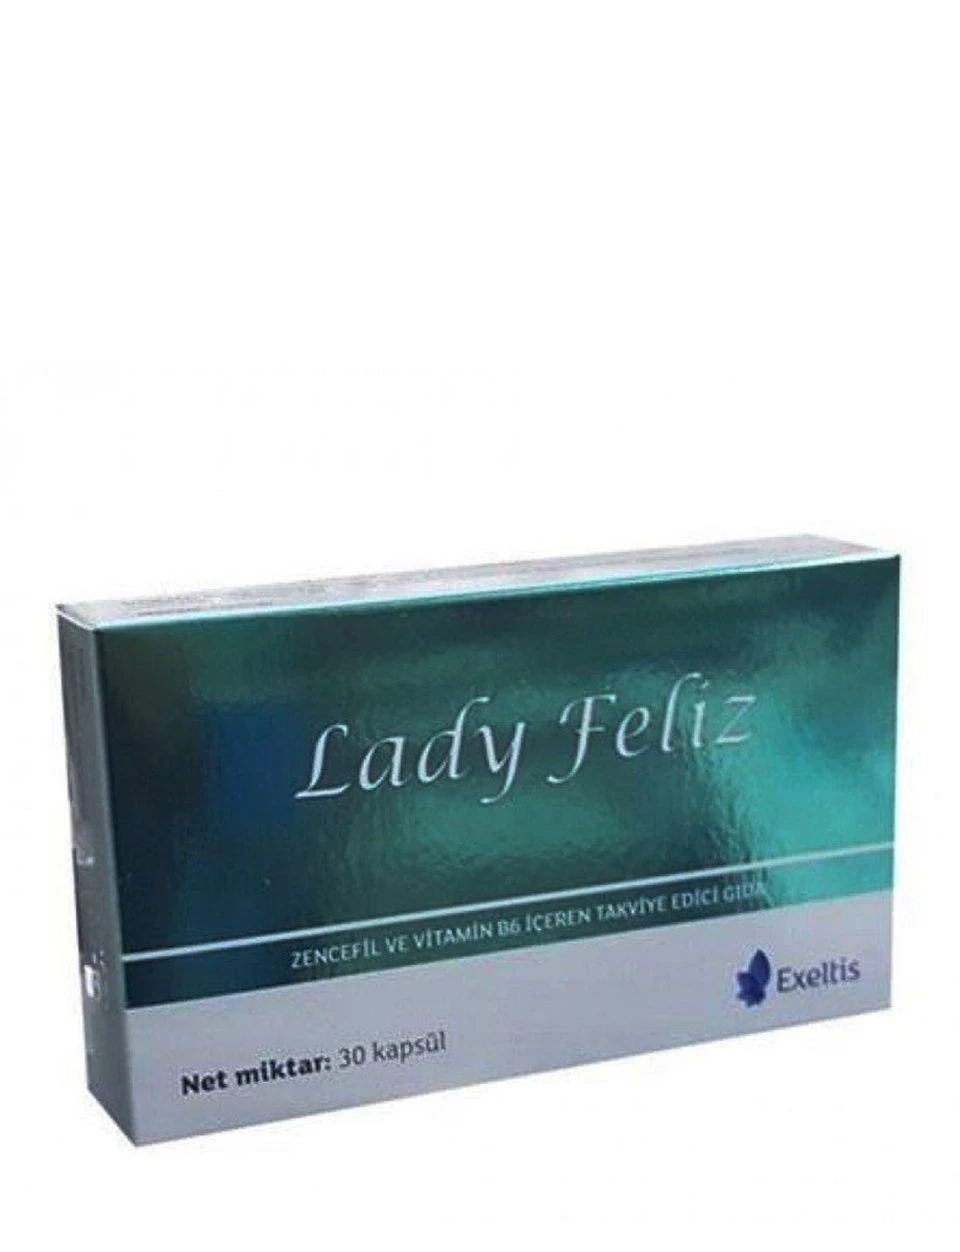 Lady Feliz Zencefil Ve Vitamin B6 30 Kapsul